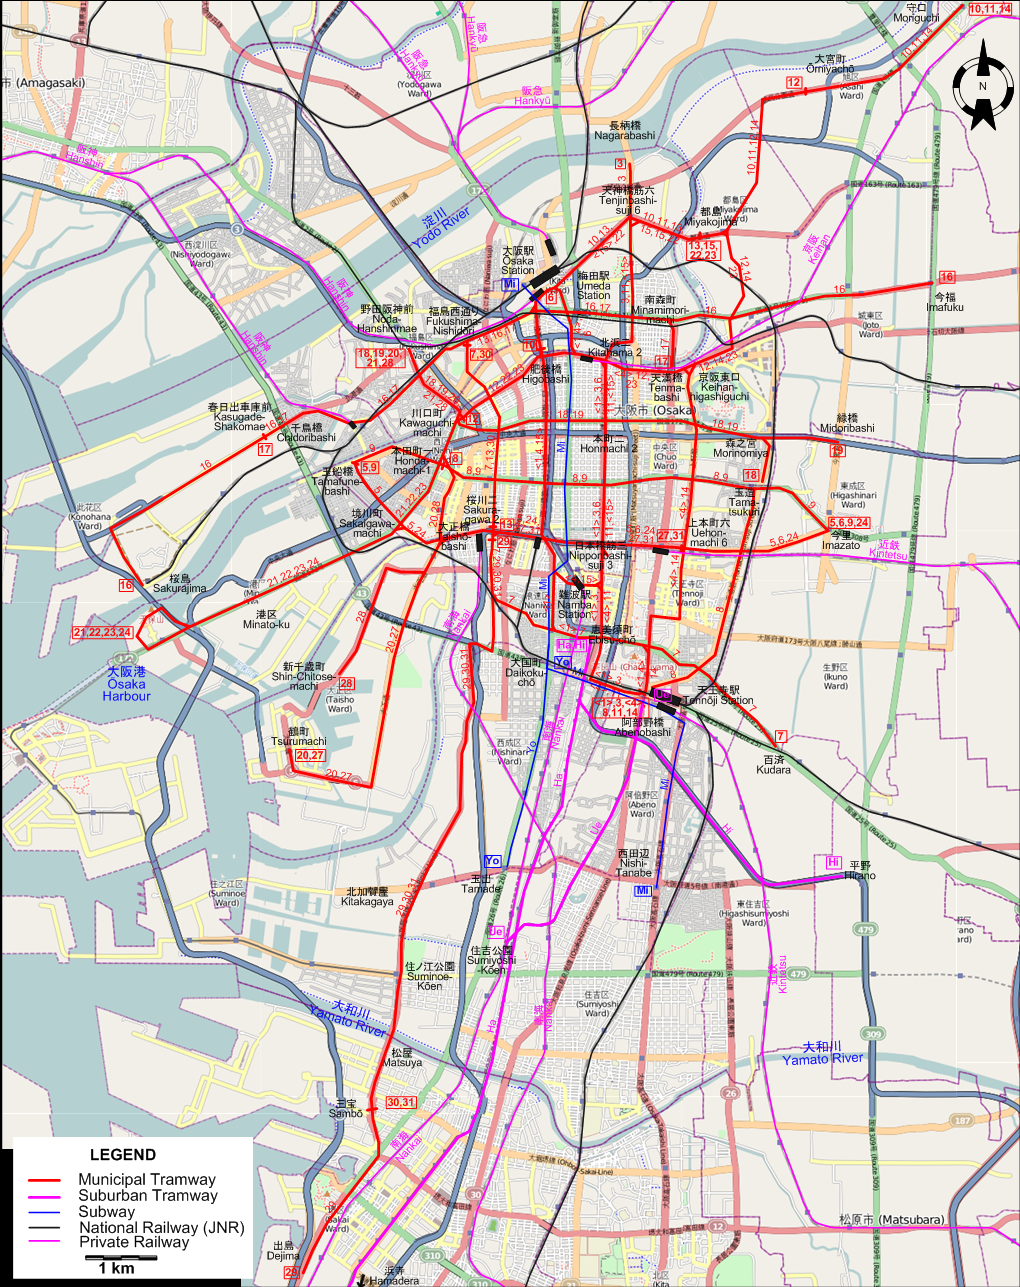 Osaka tram map – 1959